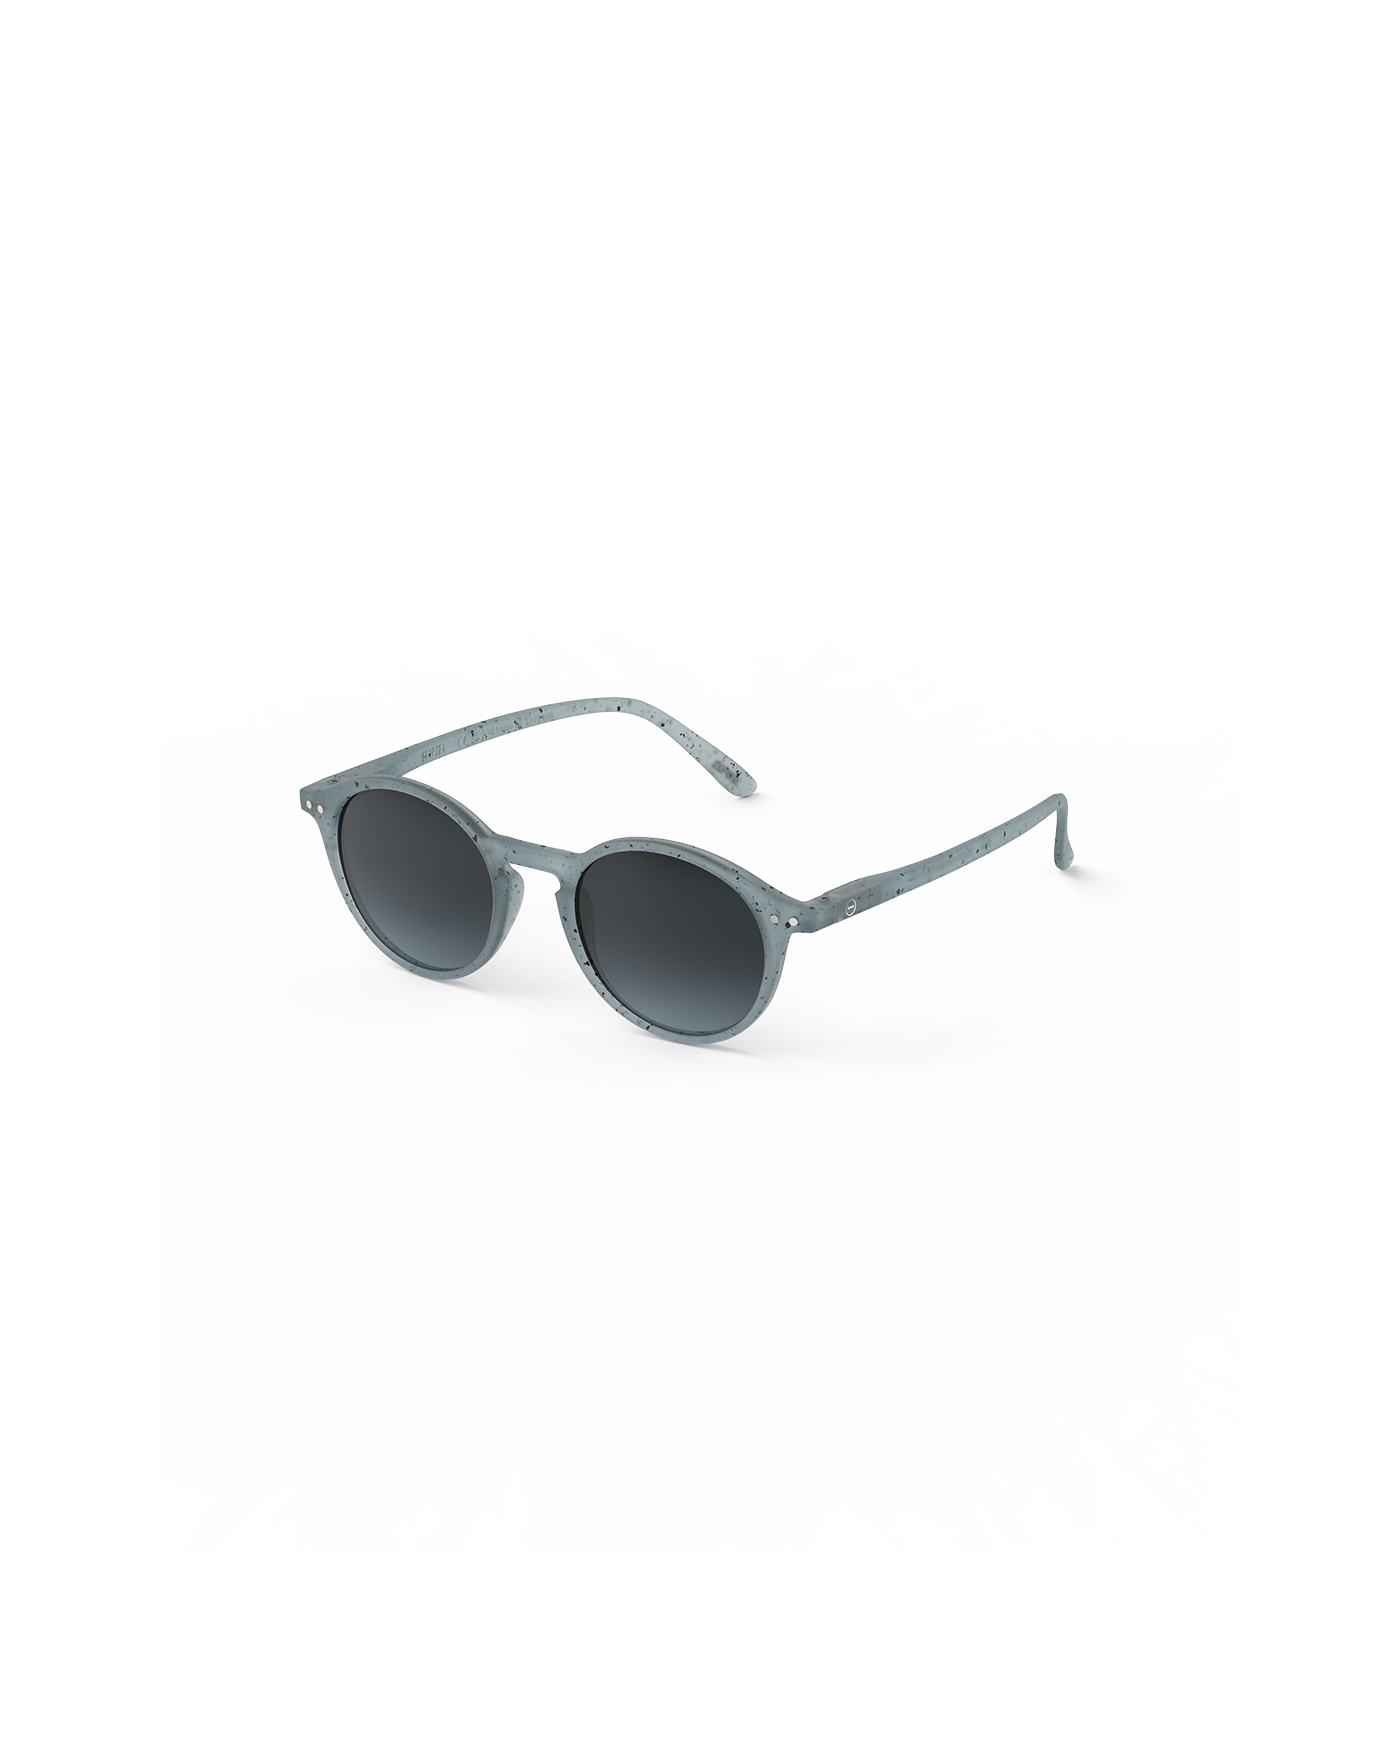 Sunglasses  - #D Shape Washed Denim